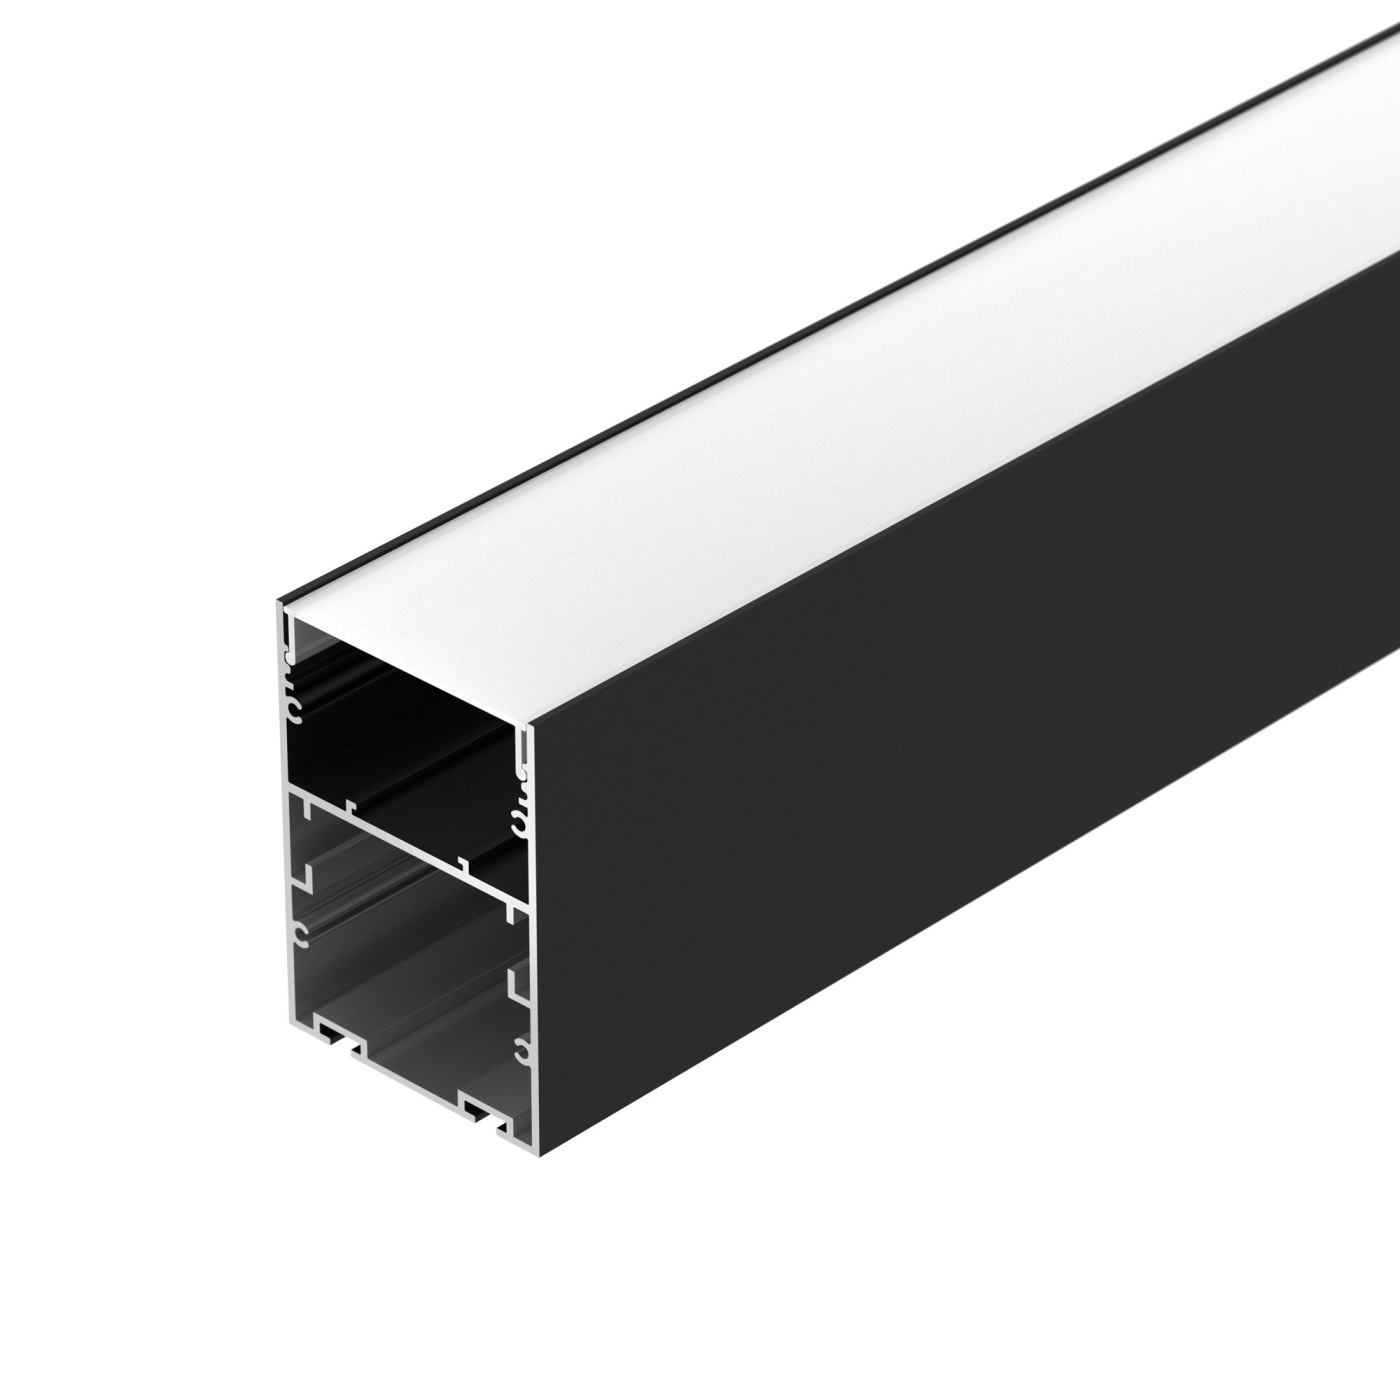 Профиль ARH-LINE-6085-2000 BLACK профиль алюминиевый накладной подвесной с отсеком для бп серебро cab265